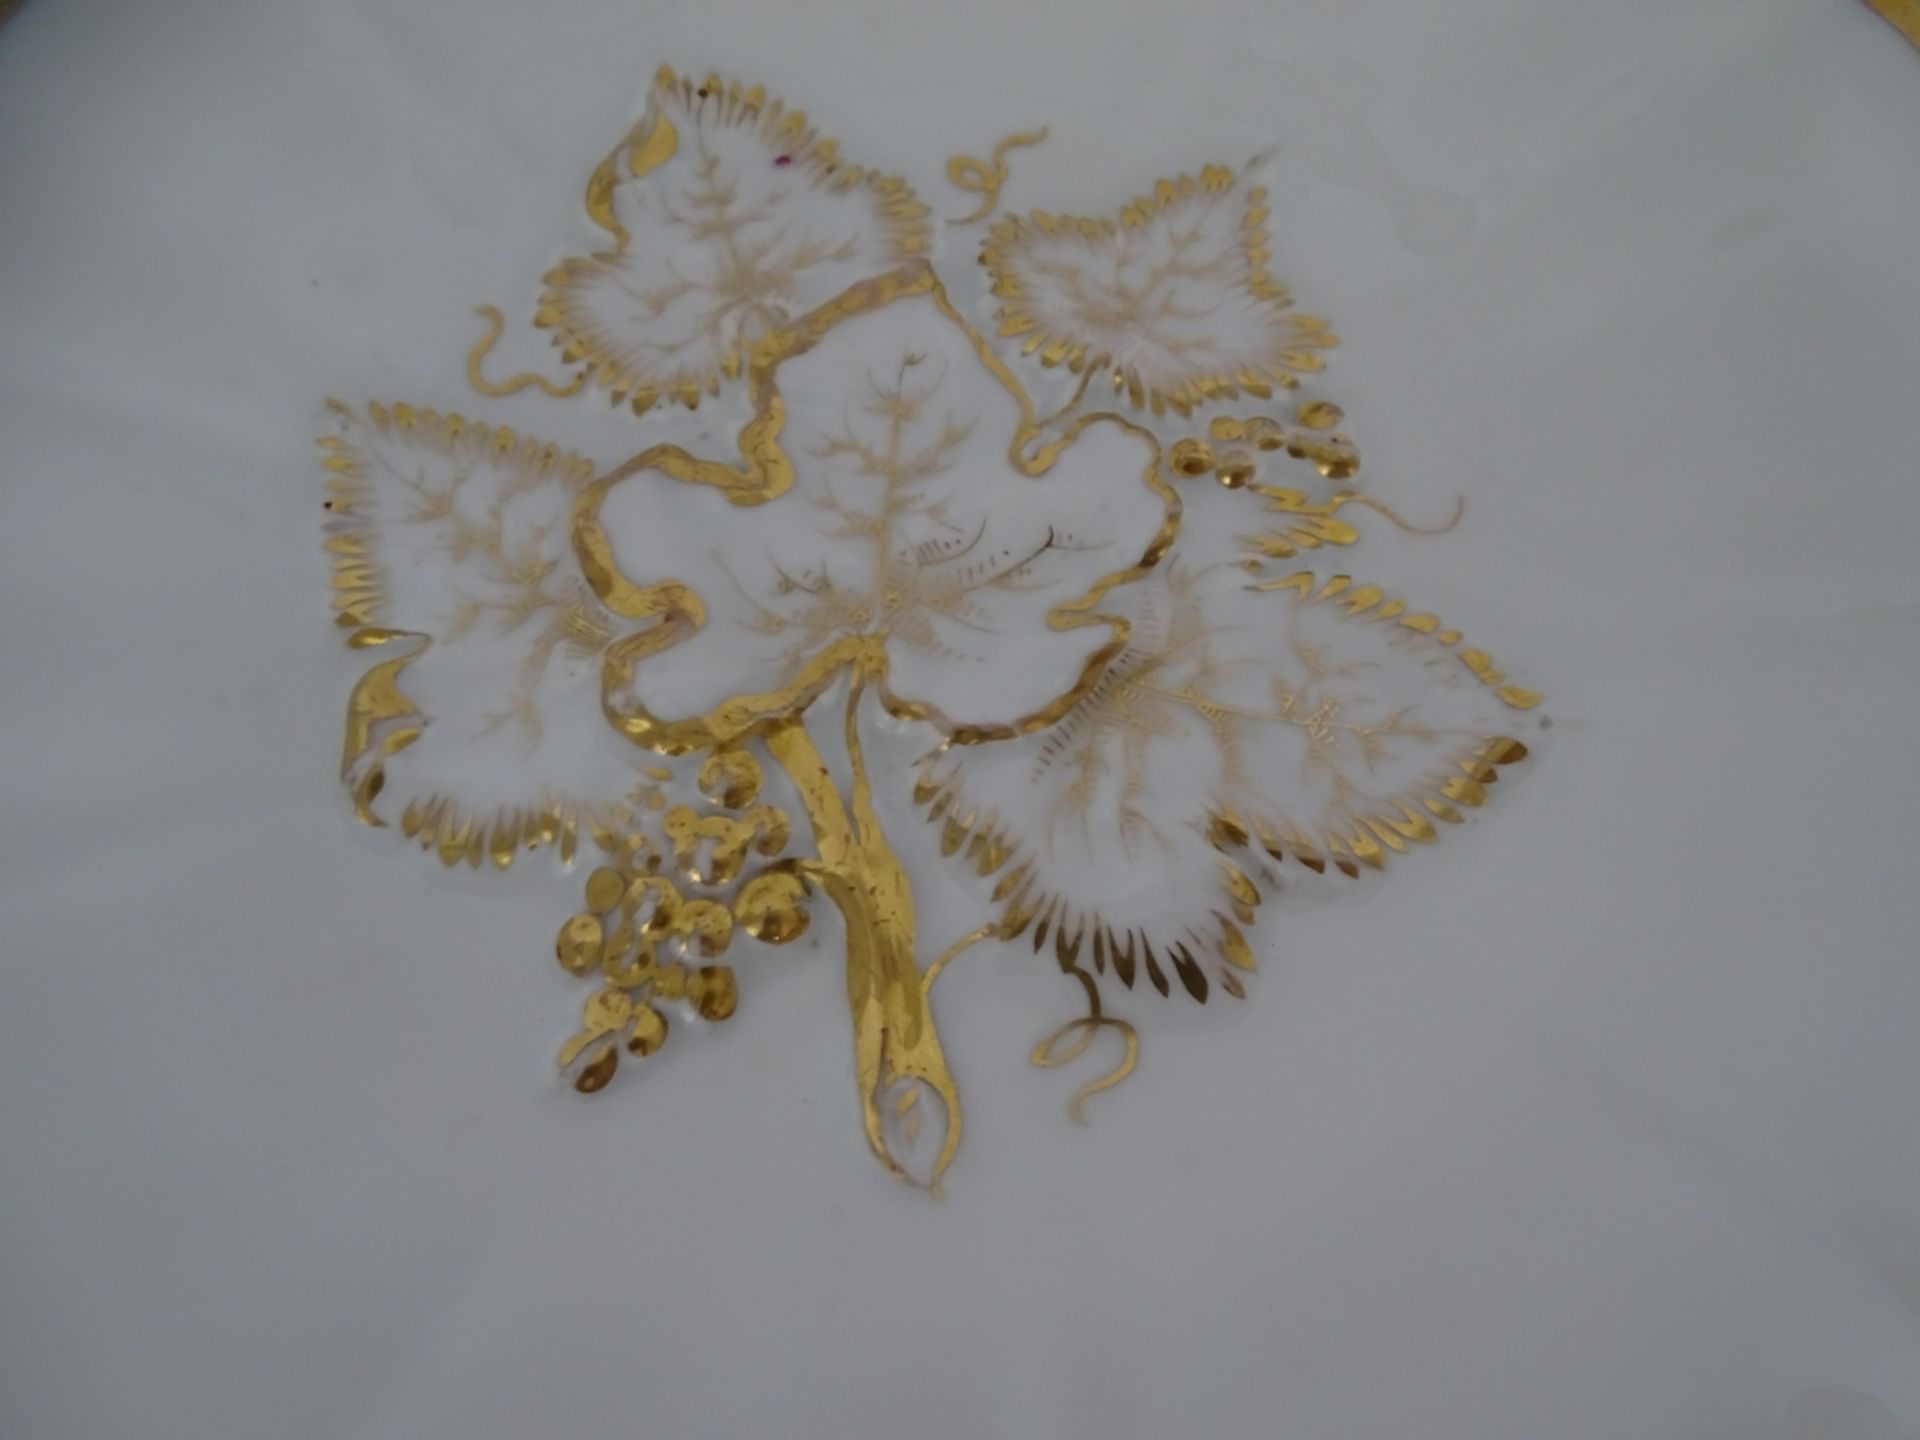 runder Teller mit Blätter-Relief, Goldstaffage etwas berieben "KPM" Krister, D-22,5 cm - Image 3 of 5